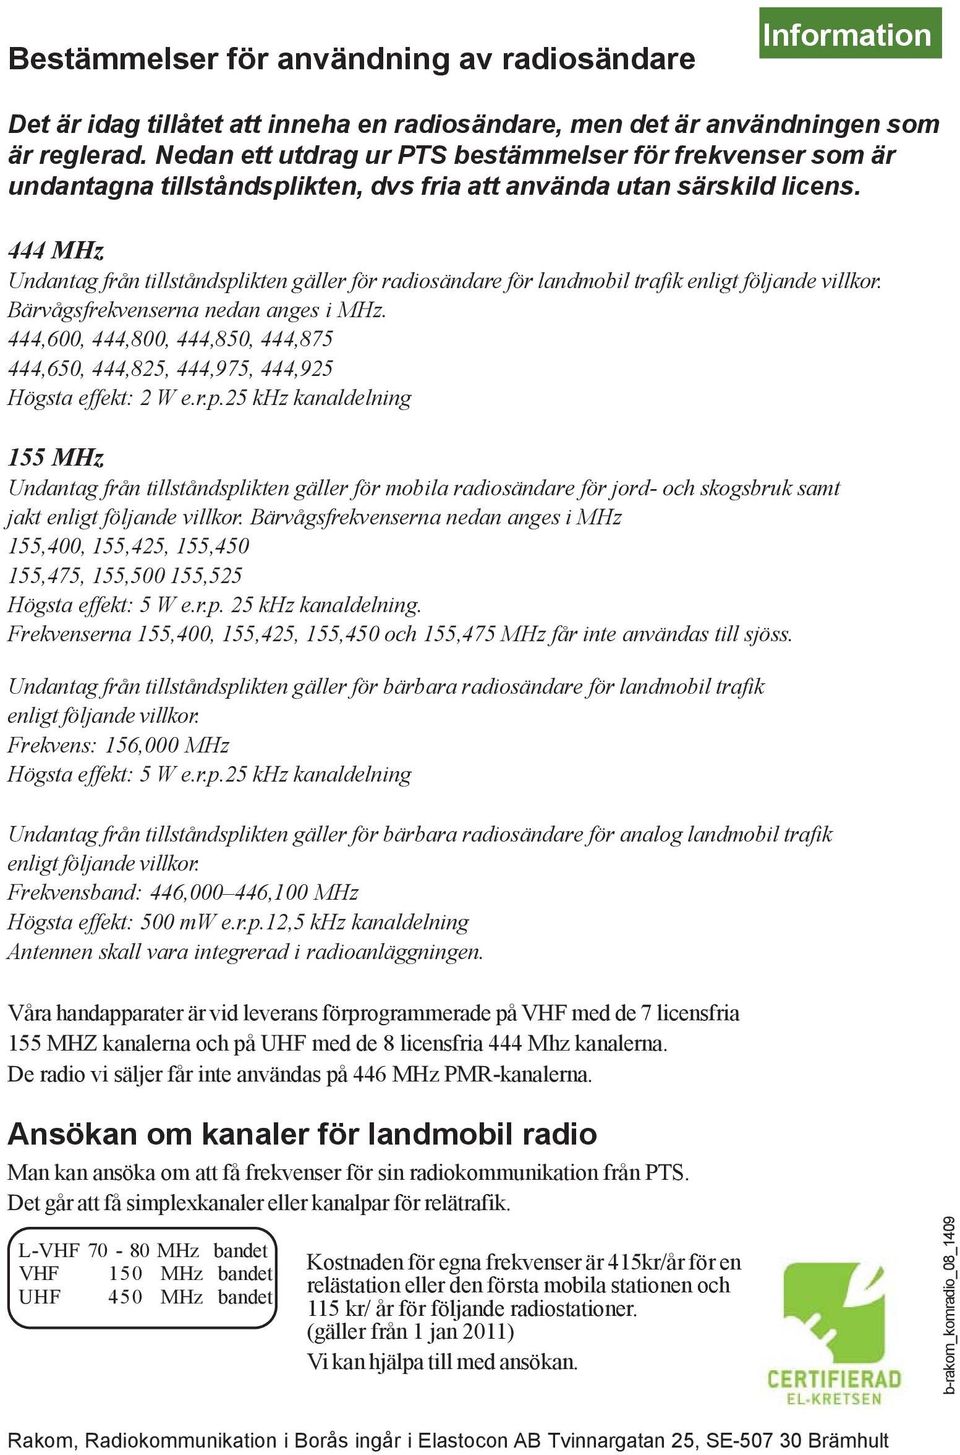 444 MHz Undantag från tillståndsplikten gäller för radiosändare för landmobil trafik enligt följande villkor. Bärvågsfrekvenserna nedan anges i MHz.